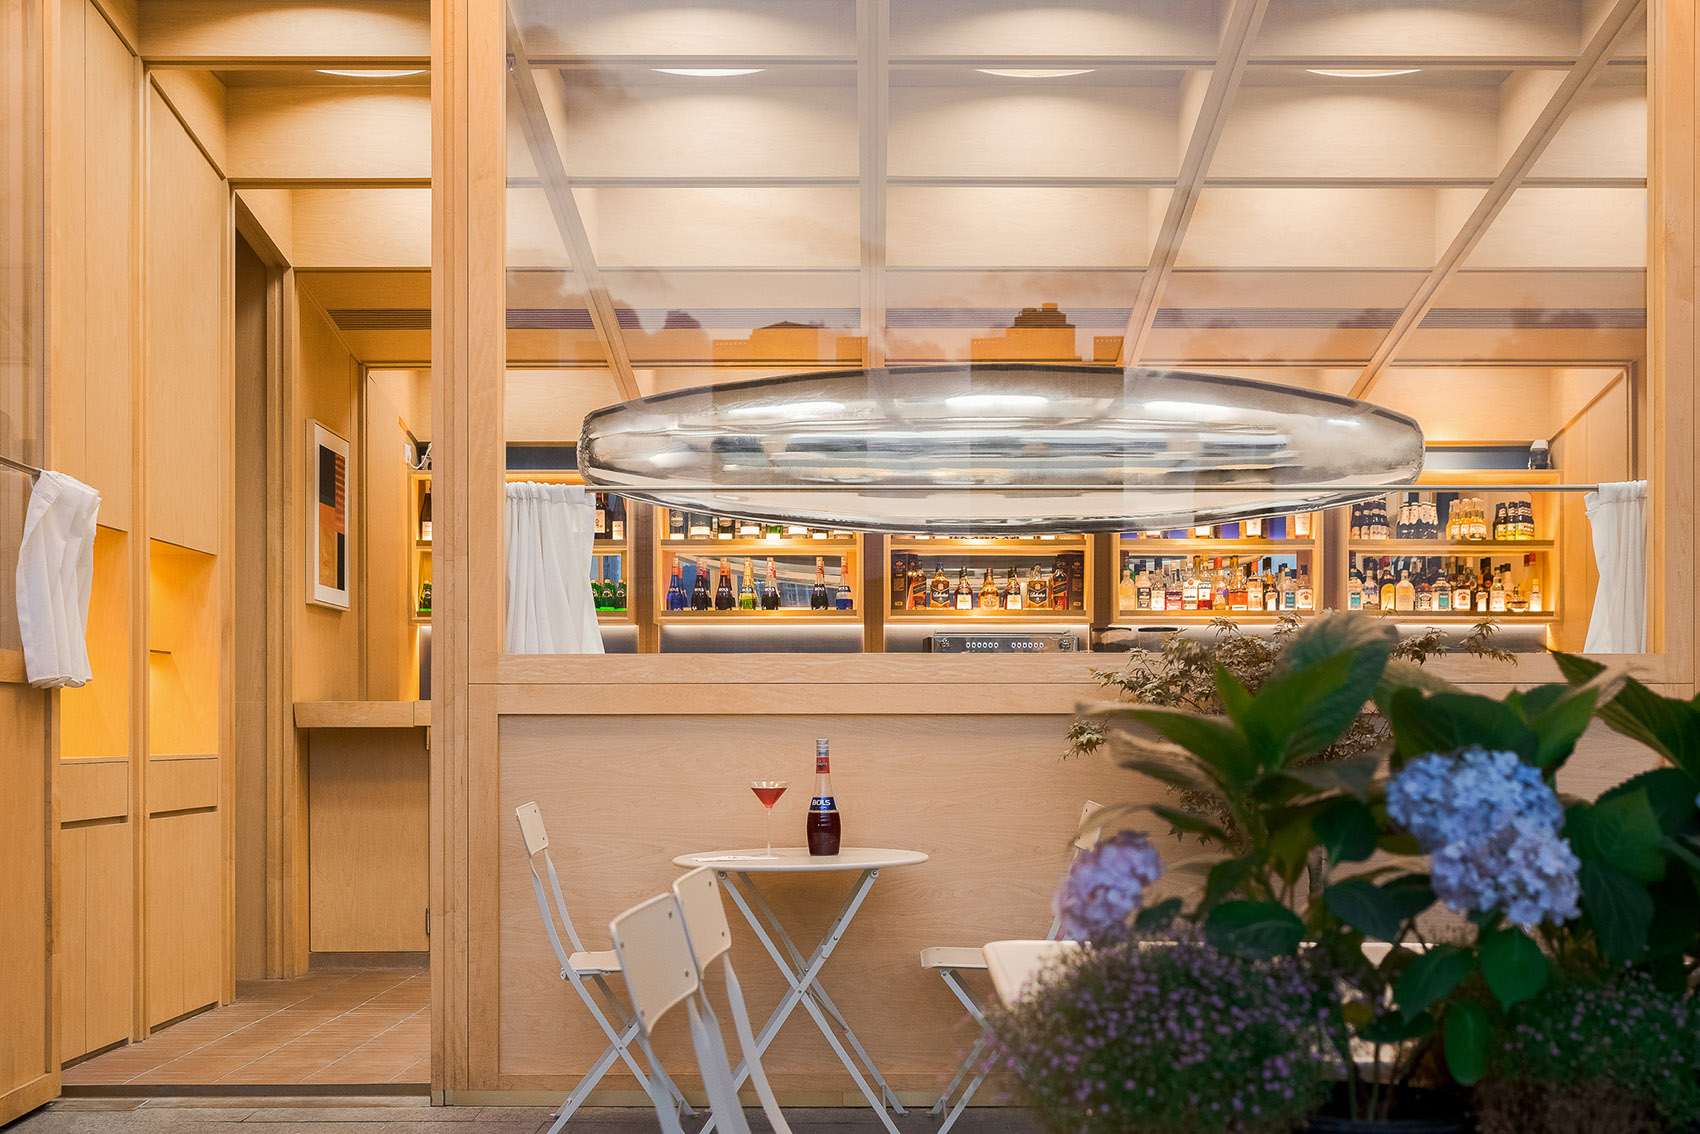 浮廊C2 Cafe &  Bar咖啡厅，深圳/专门为年轻人打造的“空中楼阁”-16